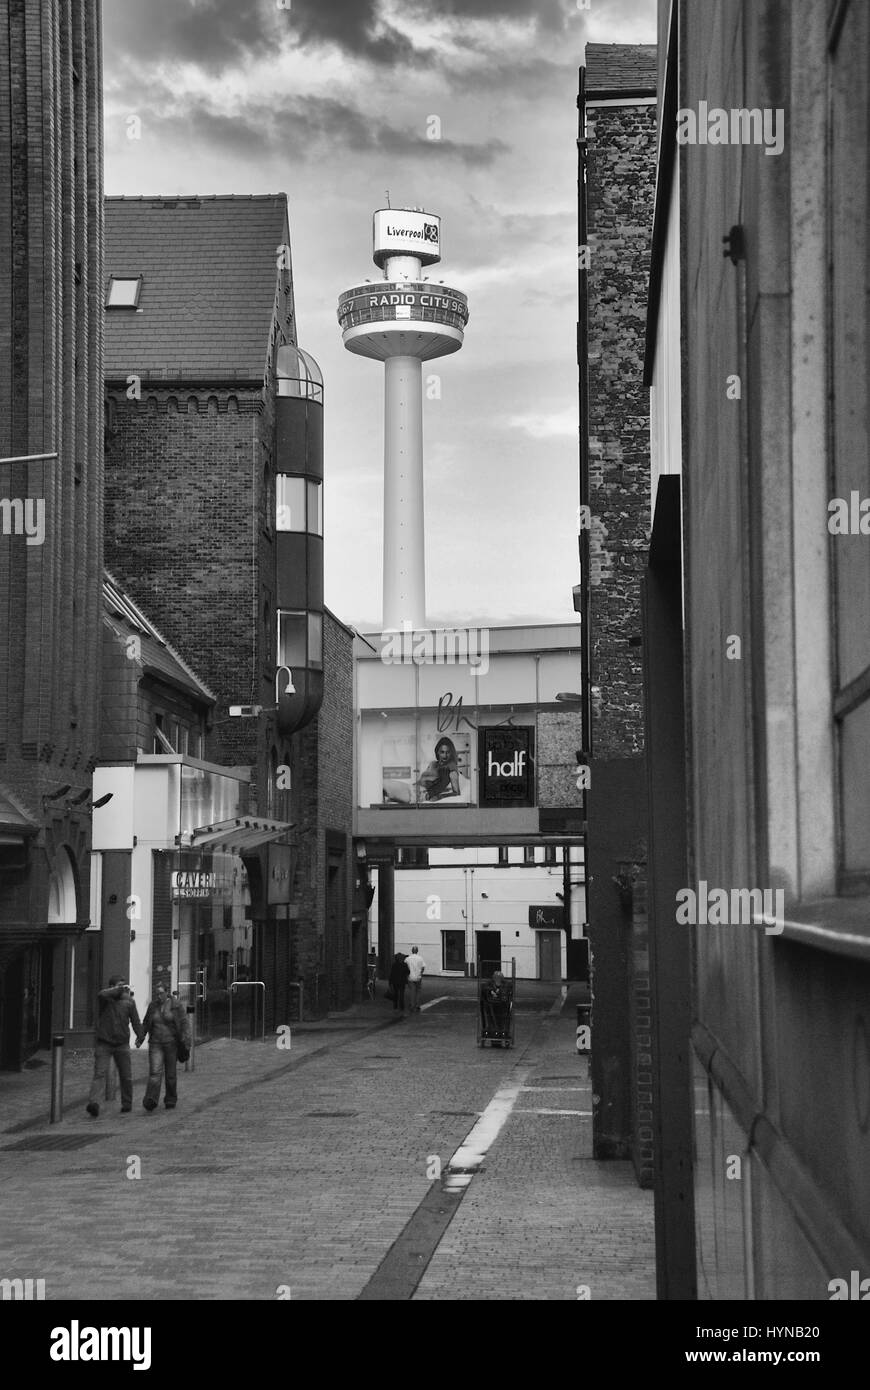 La Radio torre della città di Liverpool, in Inghilterra Foto Stock